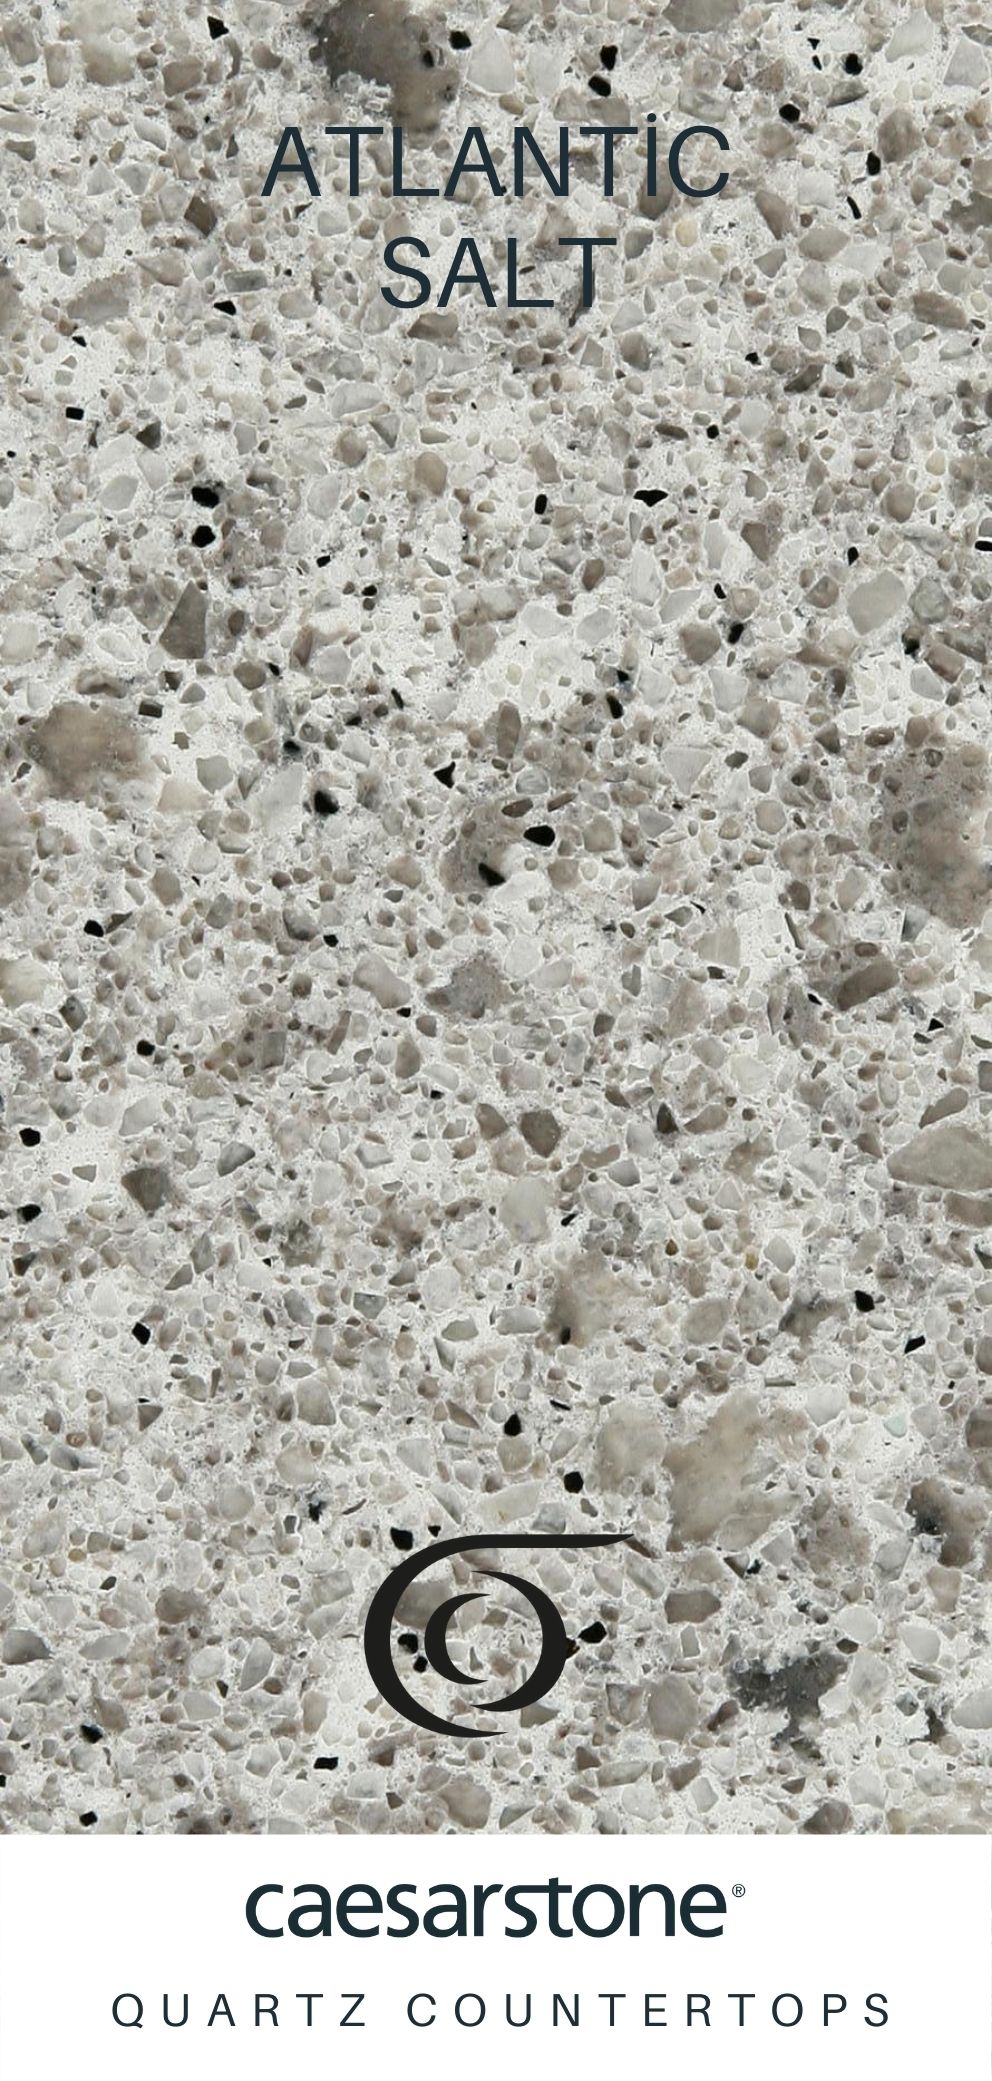 Caesarstone Quartz Countertops Atlantic Salt